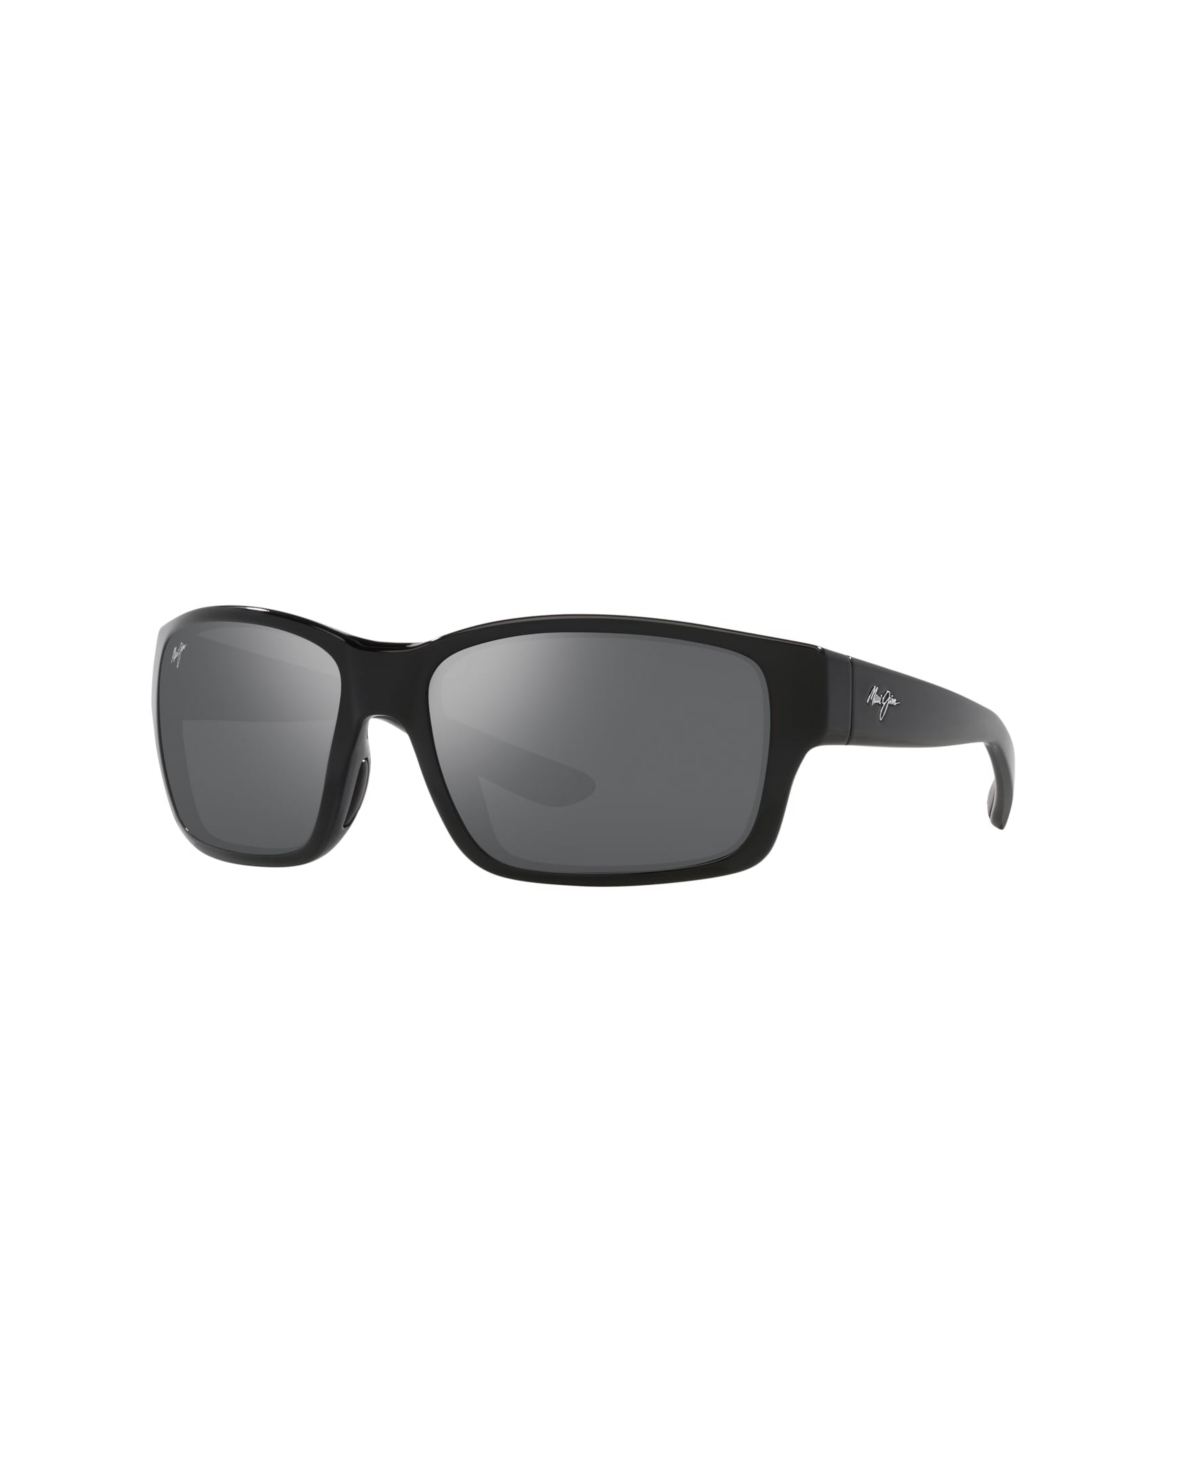 Maui Jim Men's Polarized Sunglasses, Mangroves Mj000732 In Black Shiny